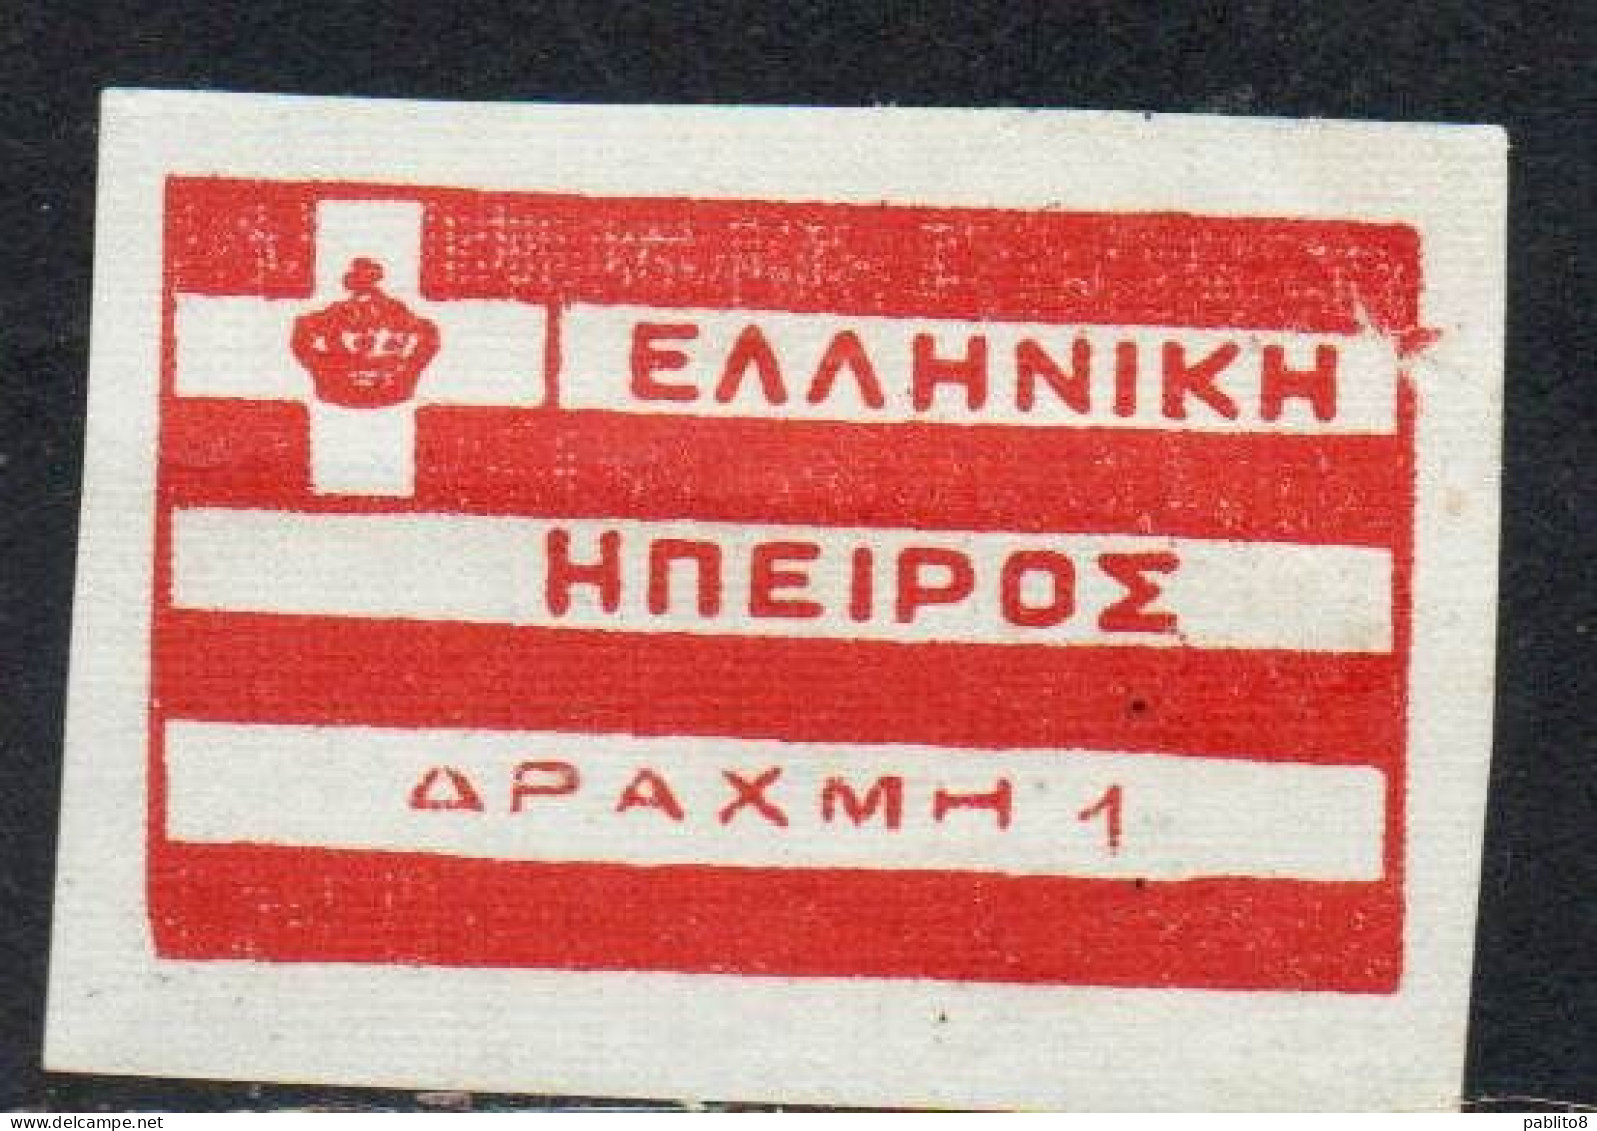 GREECE GRECIA HELLAS EPIRUS EPIRO 1914 FLAG LOCAL ISSUE 1d MNH - Epirus & Albania